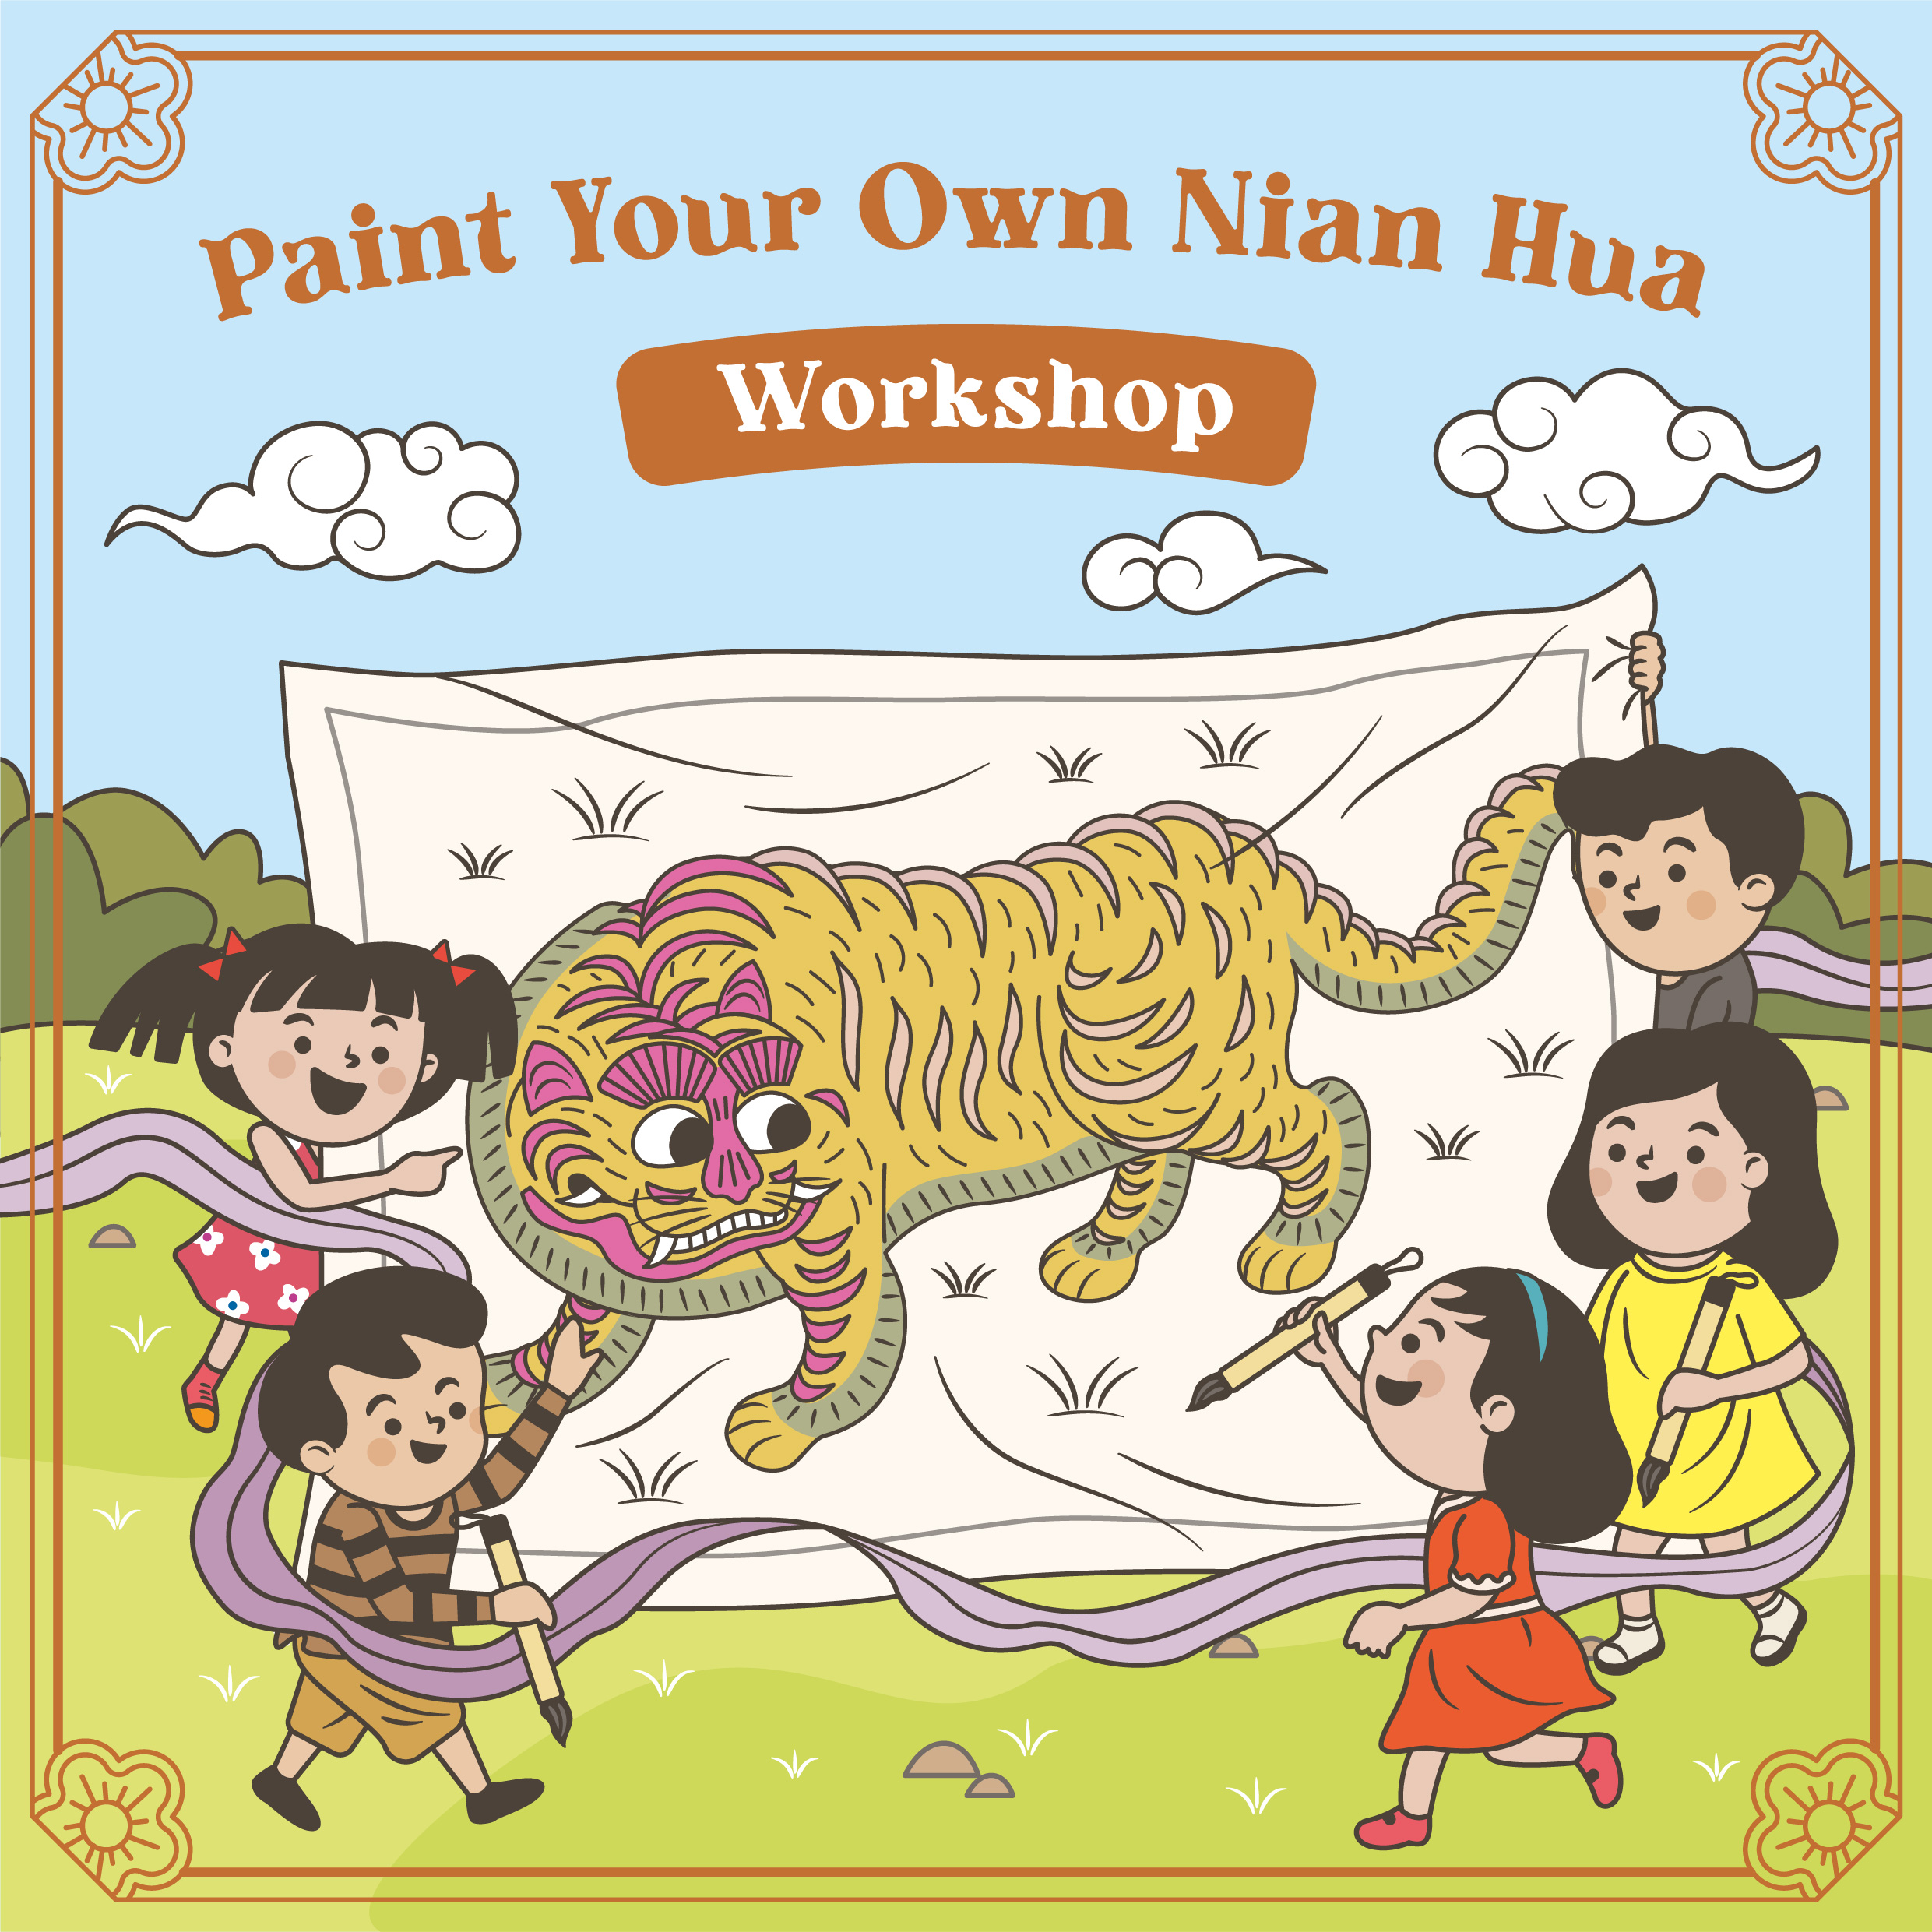 220406_3_paint_your_own_nian_nua_workshop